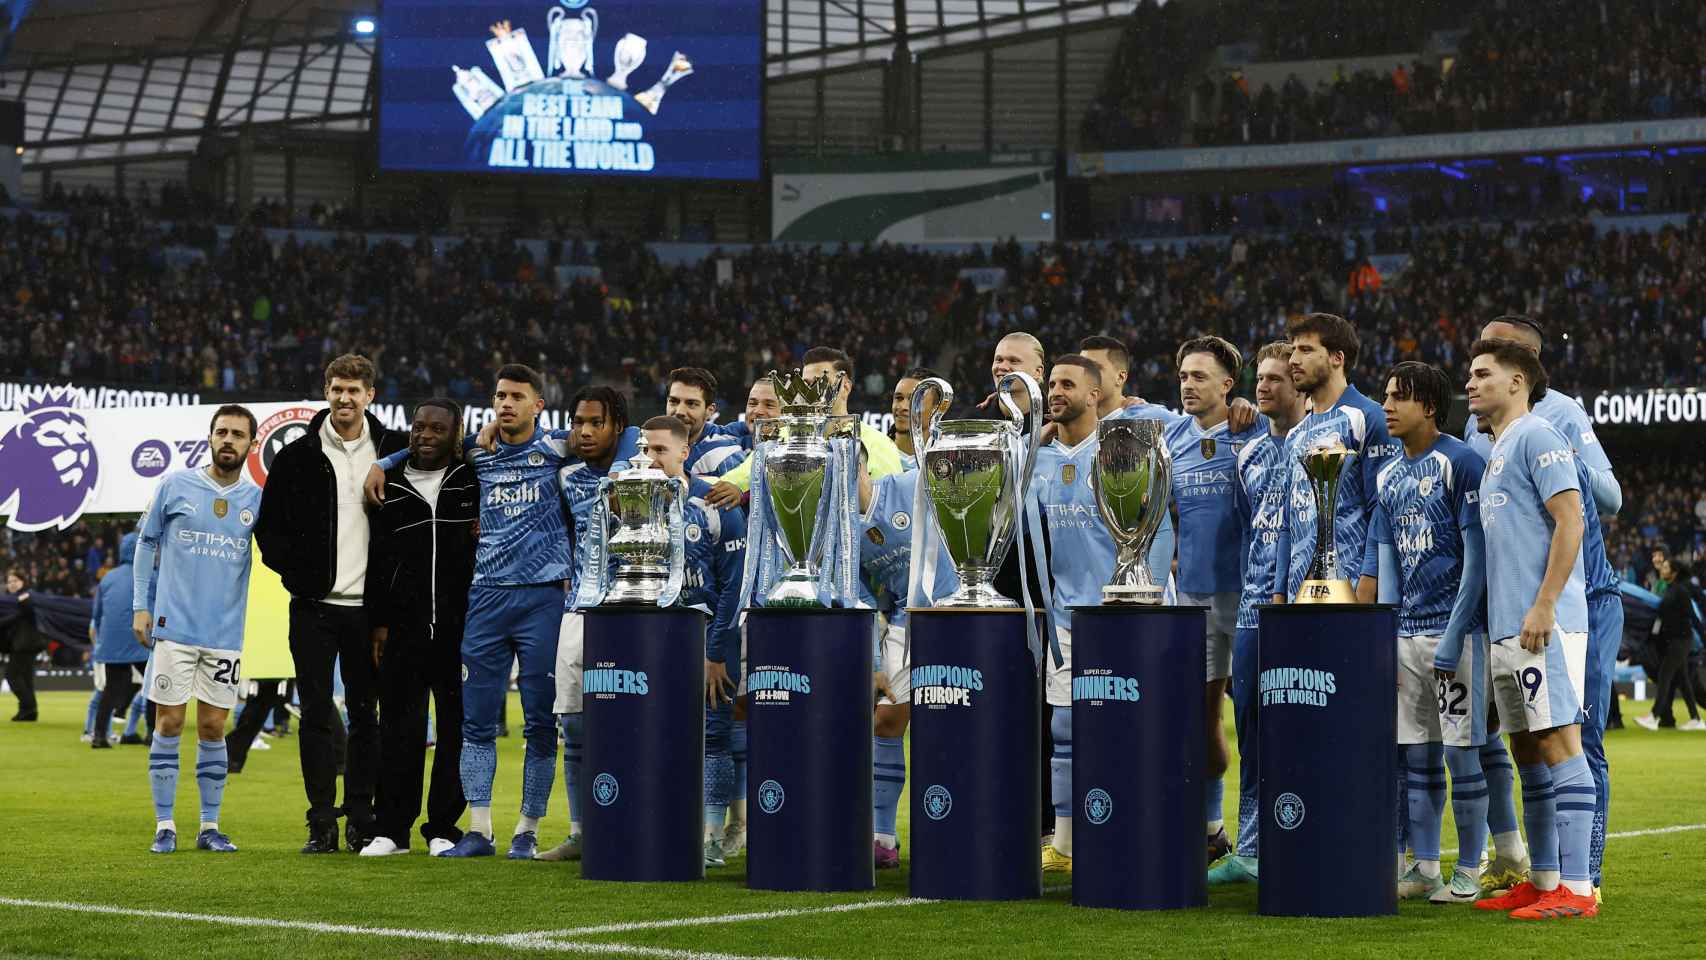 El Manchester City, posando con los títulos ganados la temporada pasada: Premier League, Champions League, FA Cup, Mundial de Clubes y Supercopa.